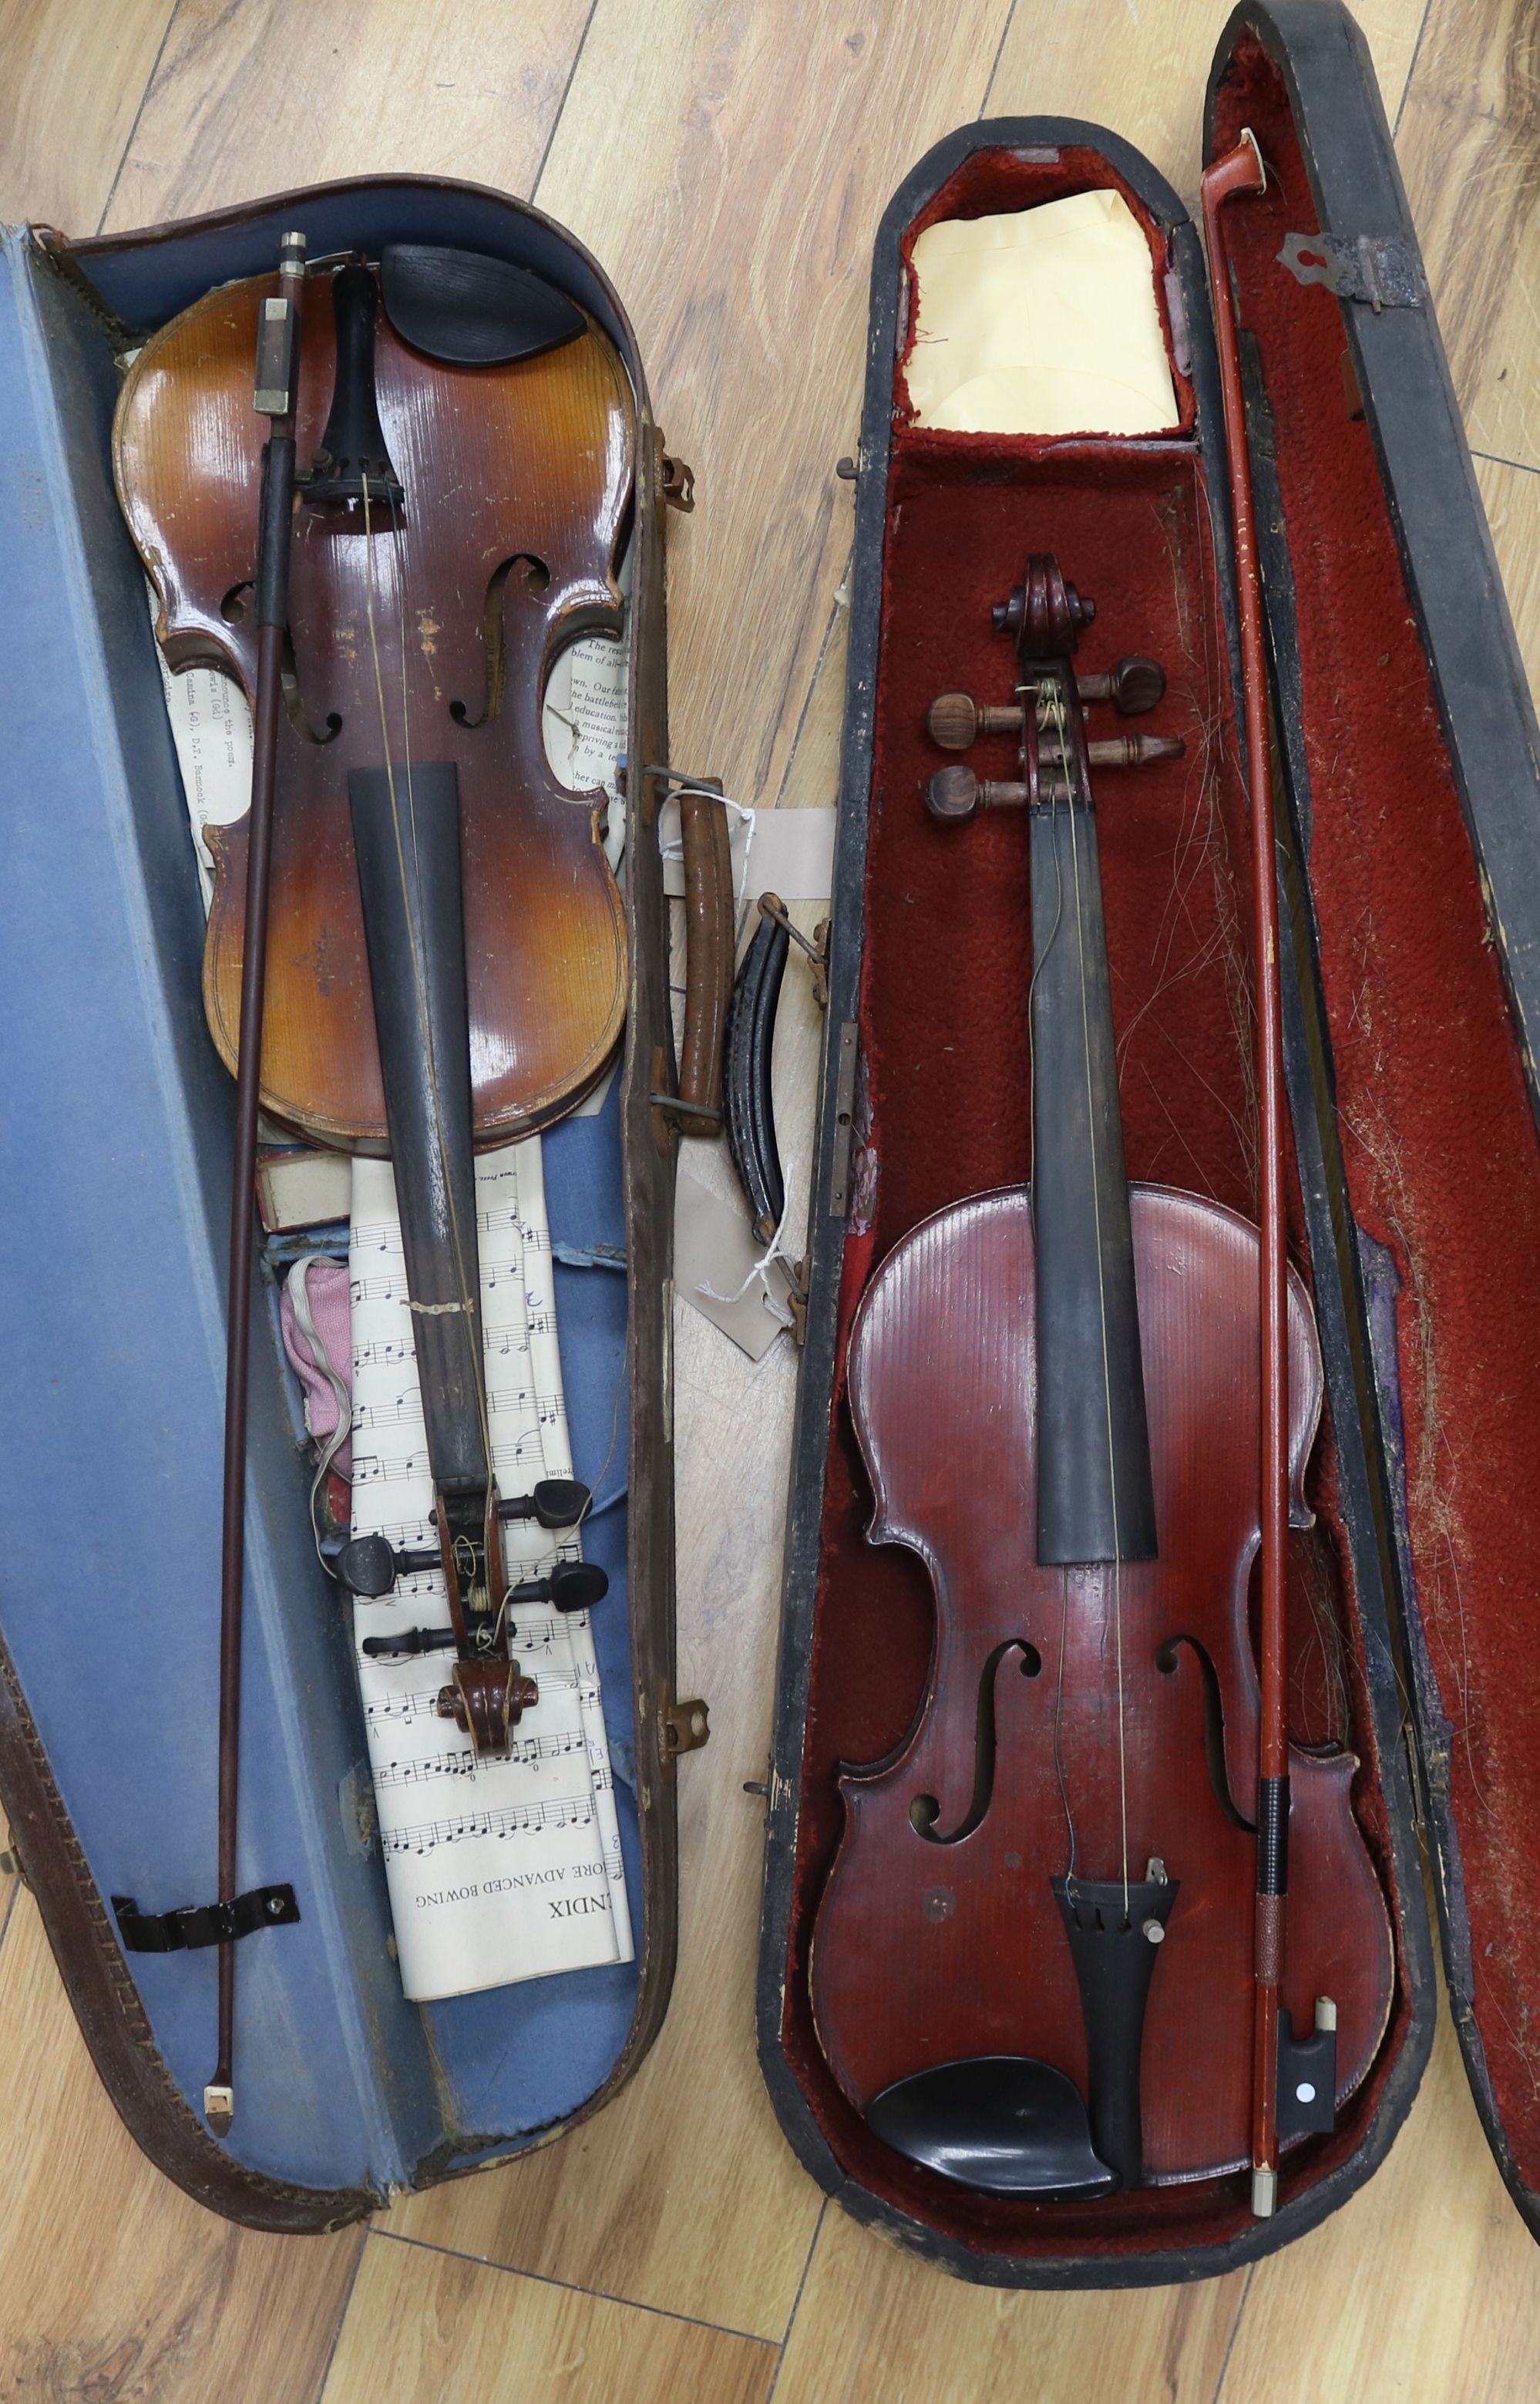 A full size violin, label Celebre Vosjen with case and a ¾ size violin bearing Strad label, case and